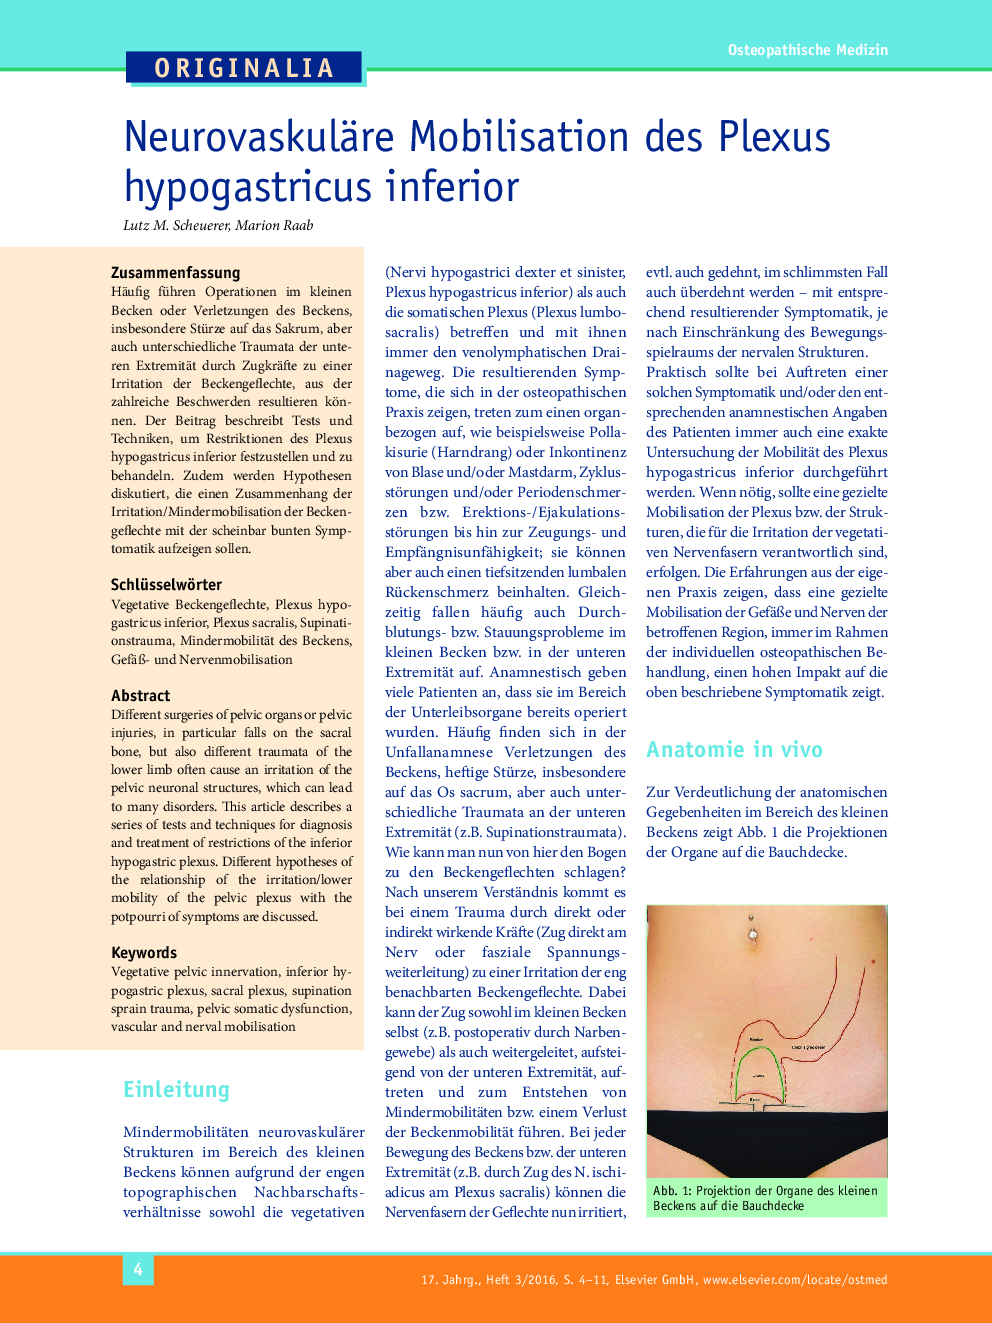 Neurovaskuläre Mobilisation des Plexus hypogastricus inferior